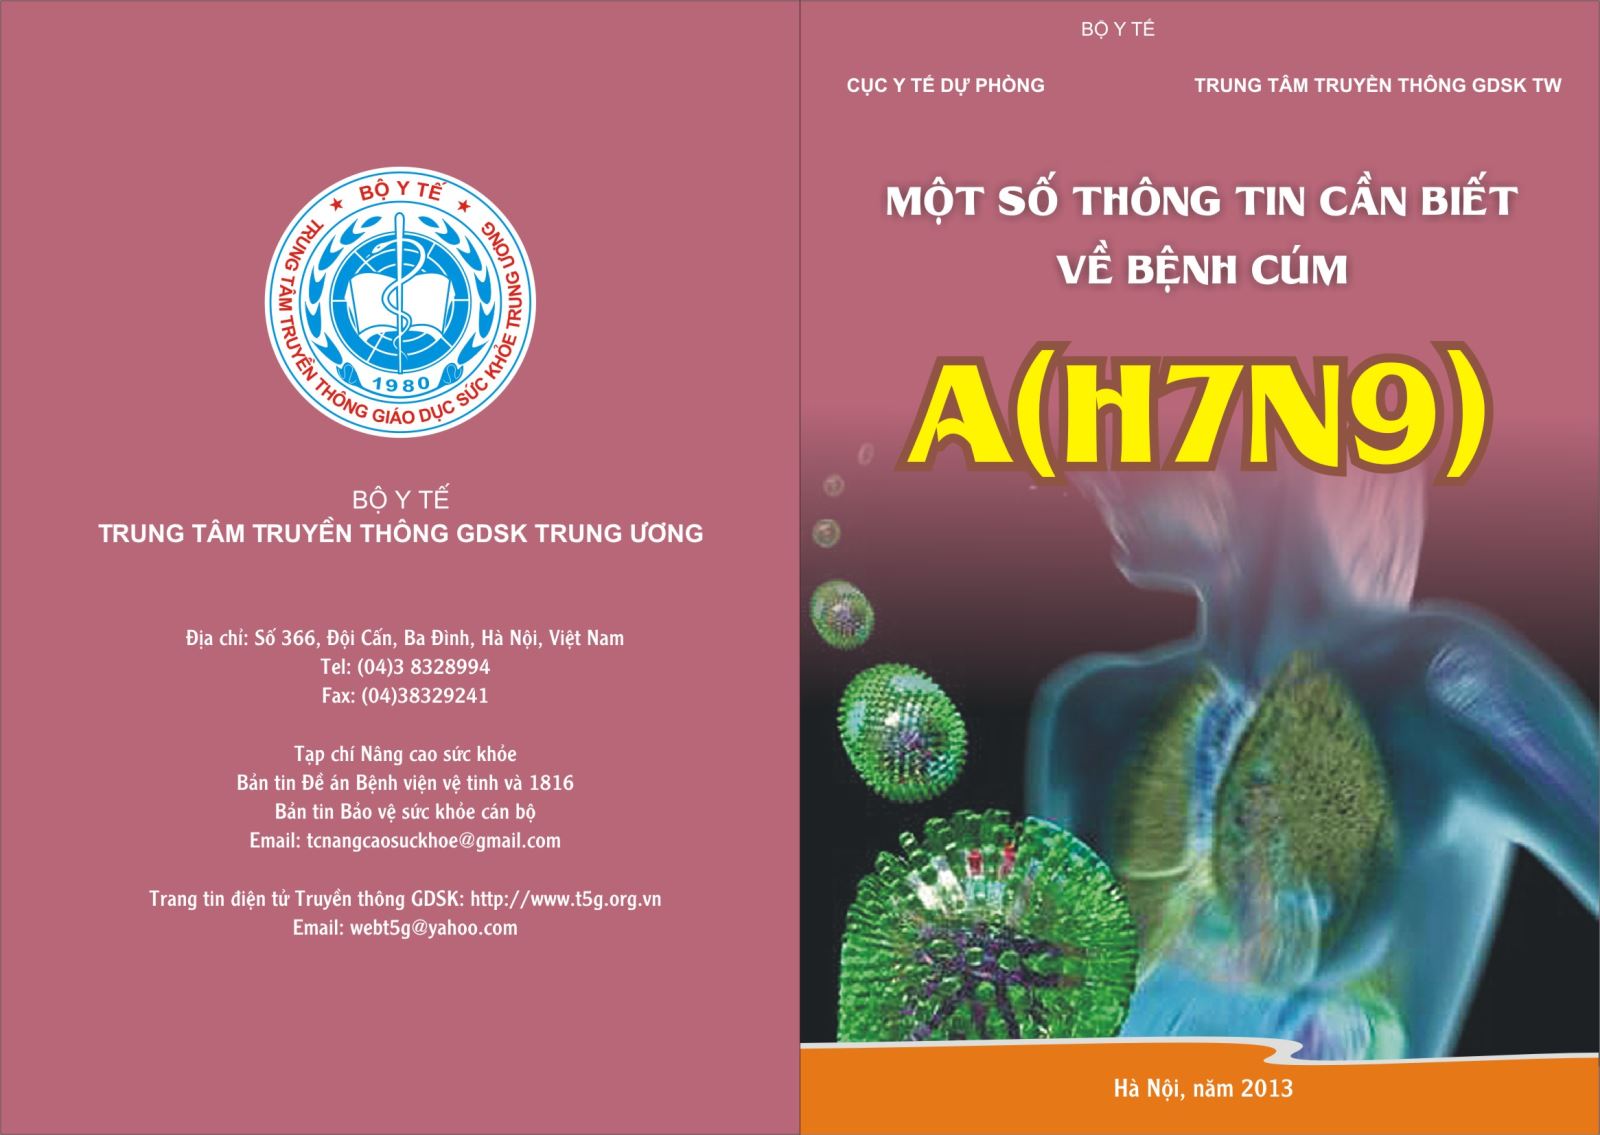 Một số thông tin cần biết về bệnh cúm A(H7N9))